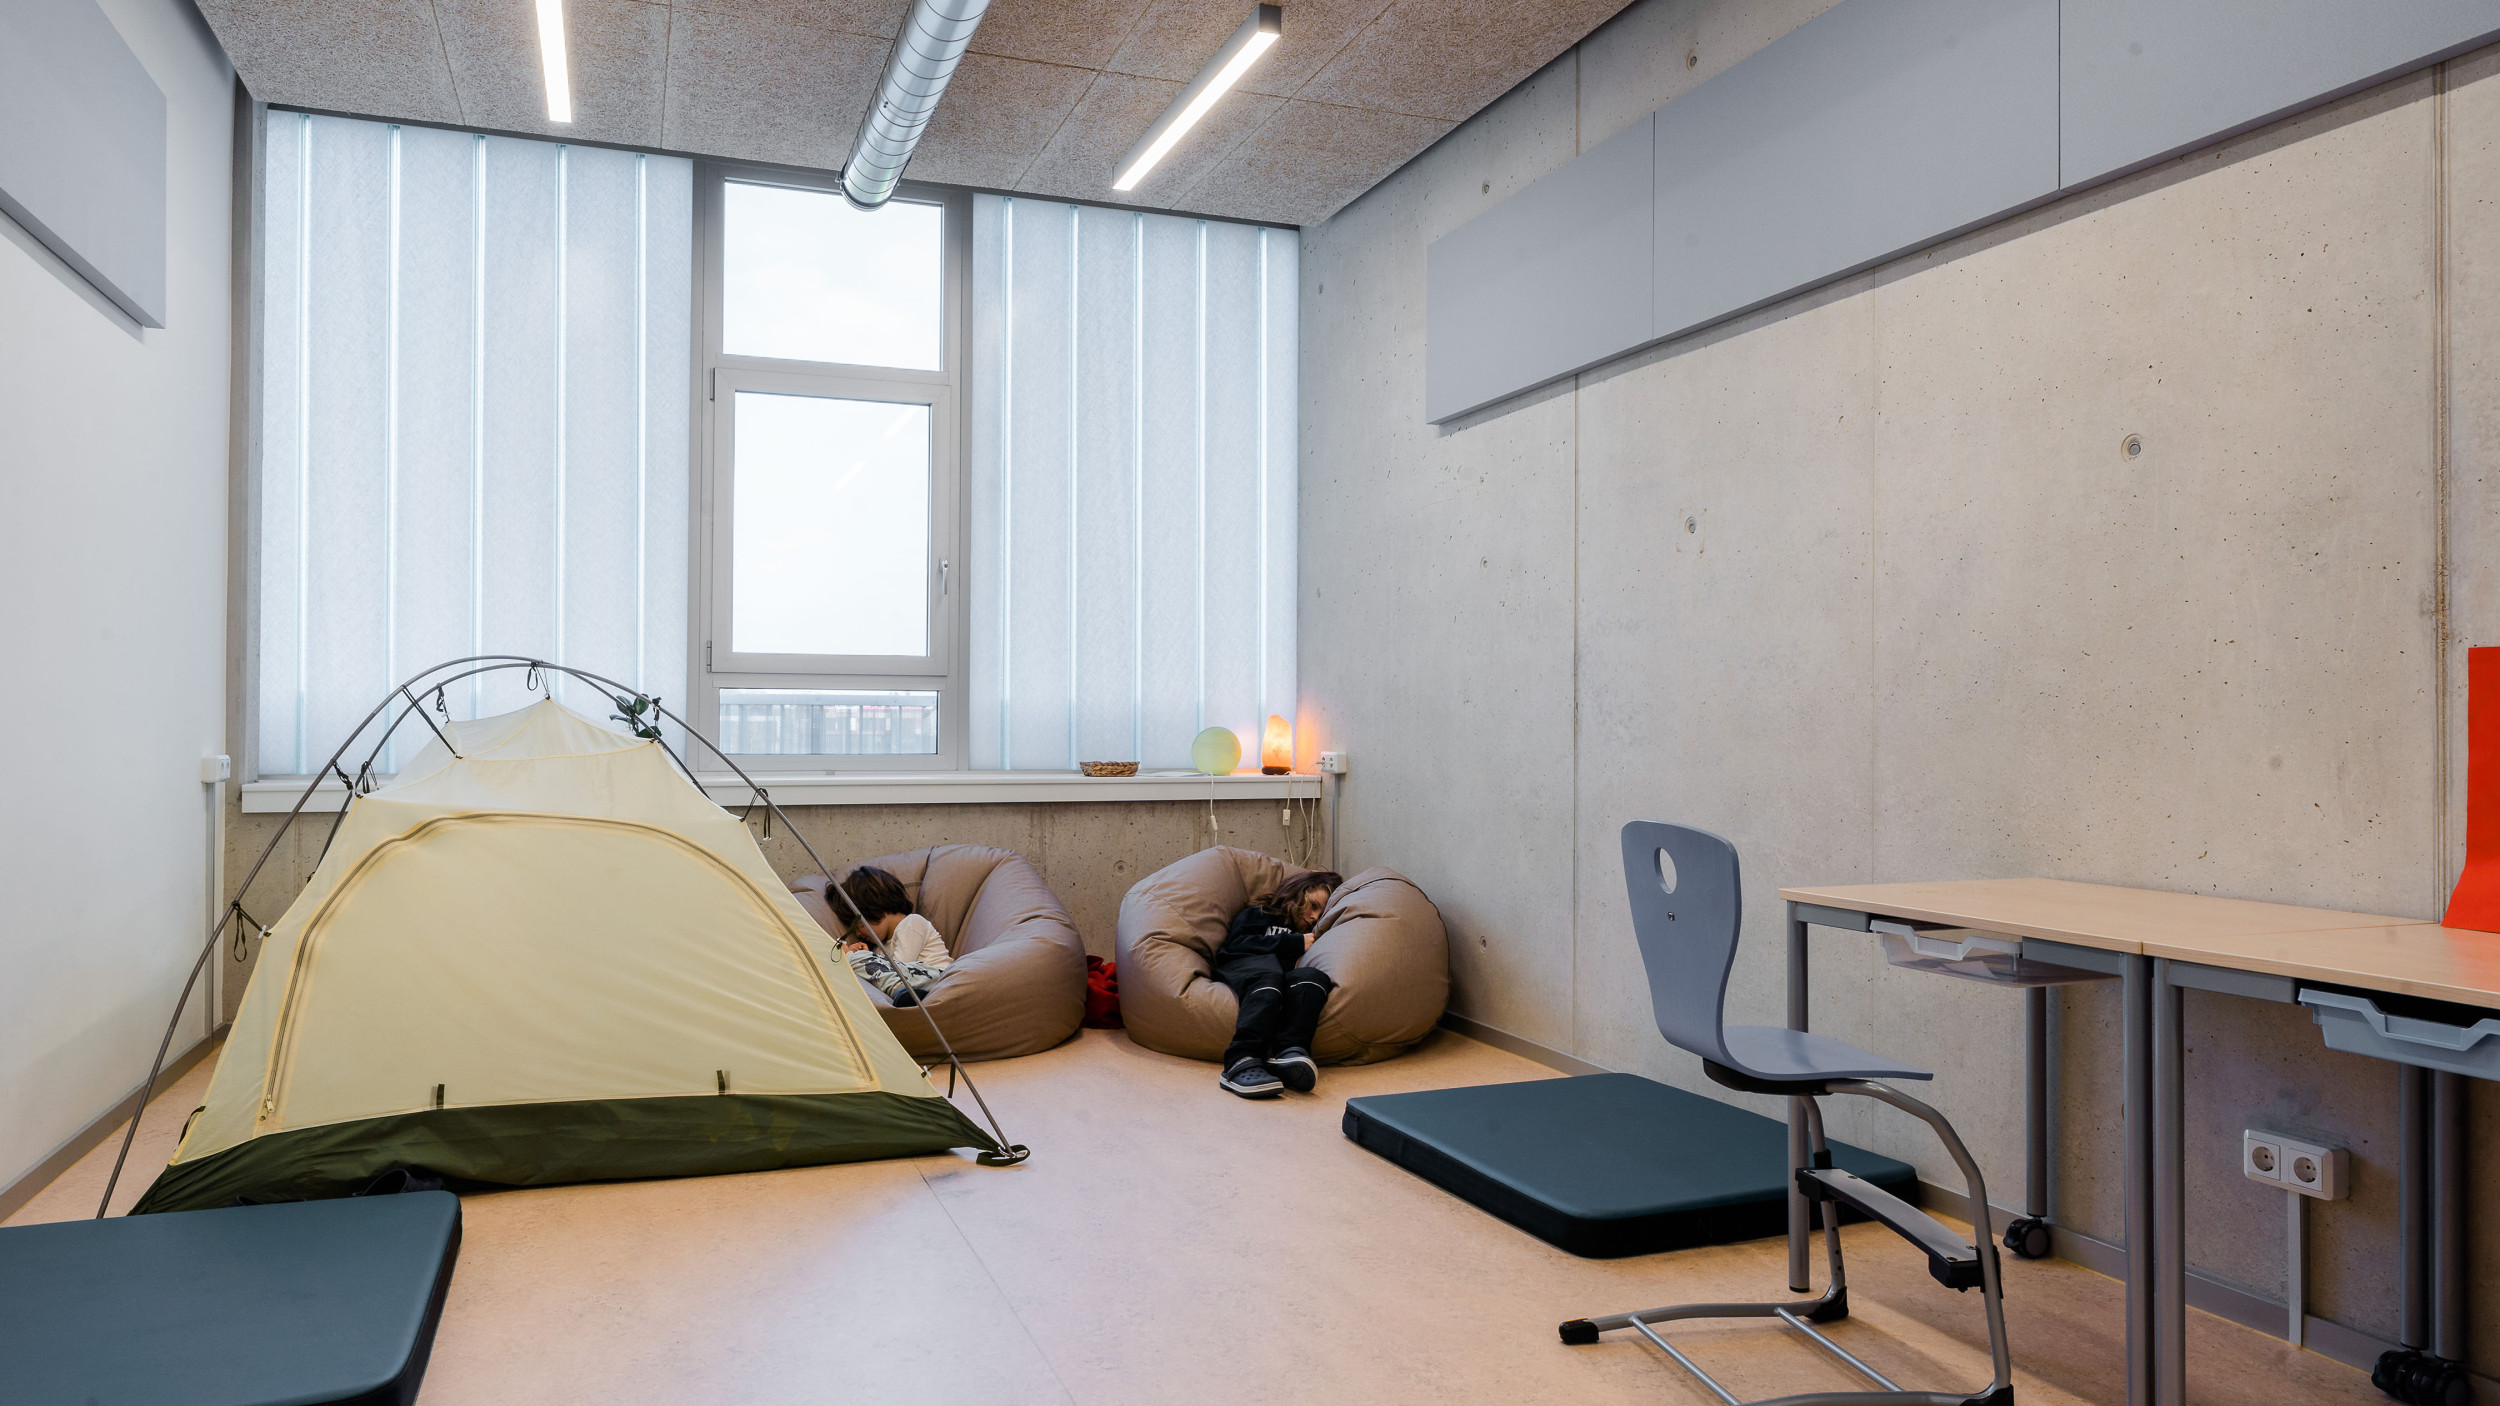 Innenperspektive zeigt Schüler:innen, die sich mit Zelten und Sitzsäcken einen Ruhebereich innerhalb des Raumes geschaffen haben.